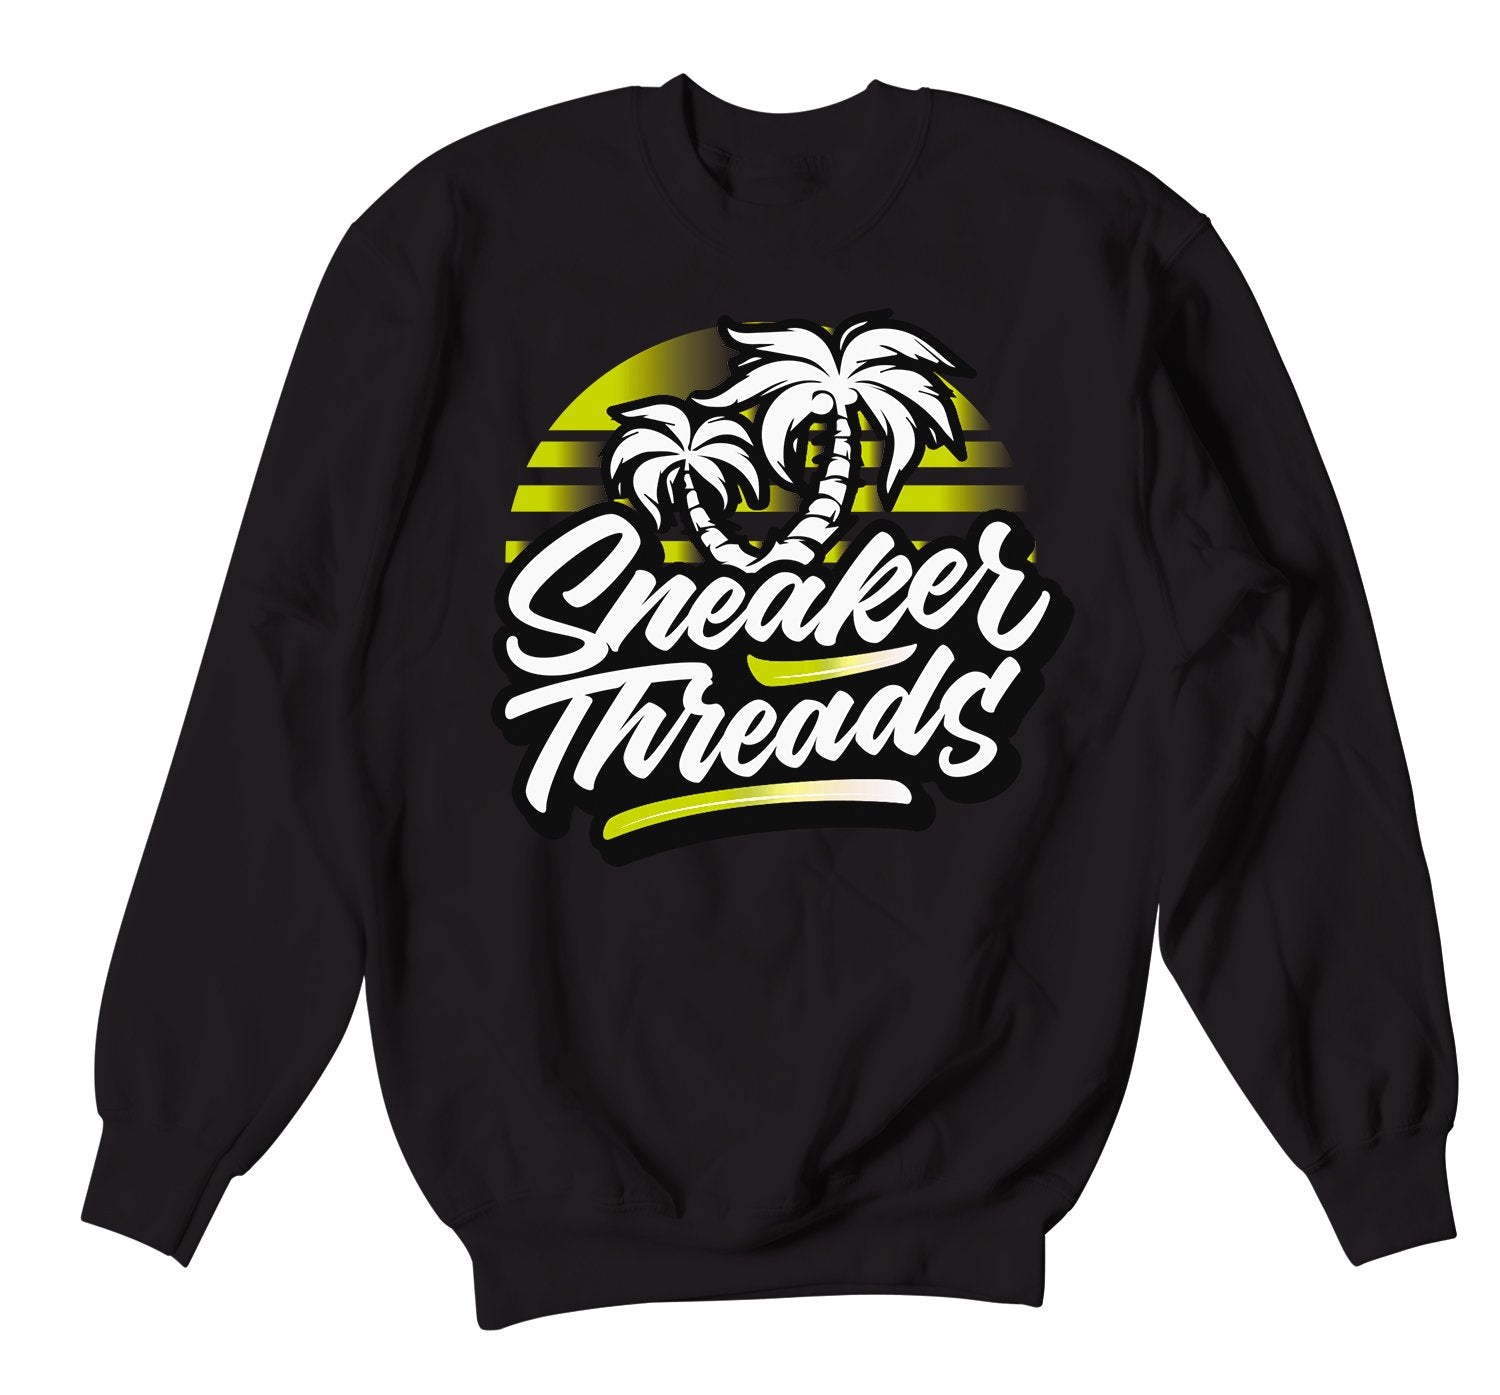 Yeezy Yeezreel boost 350 has matching sweatshirt collection